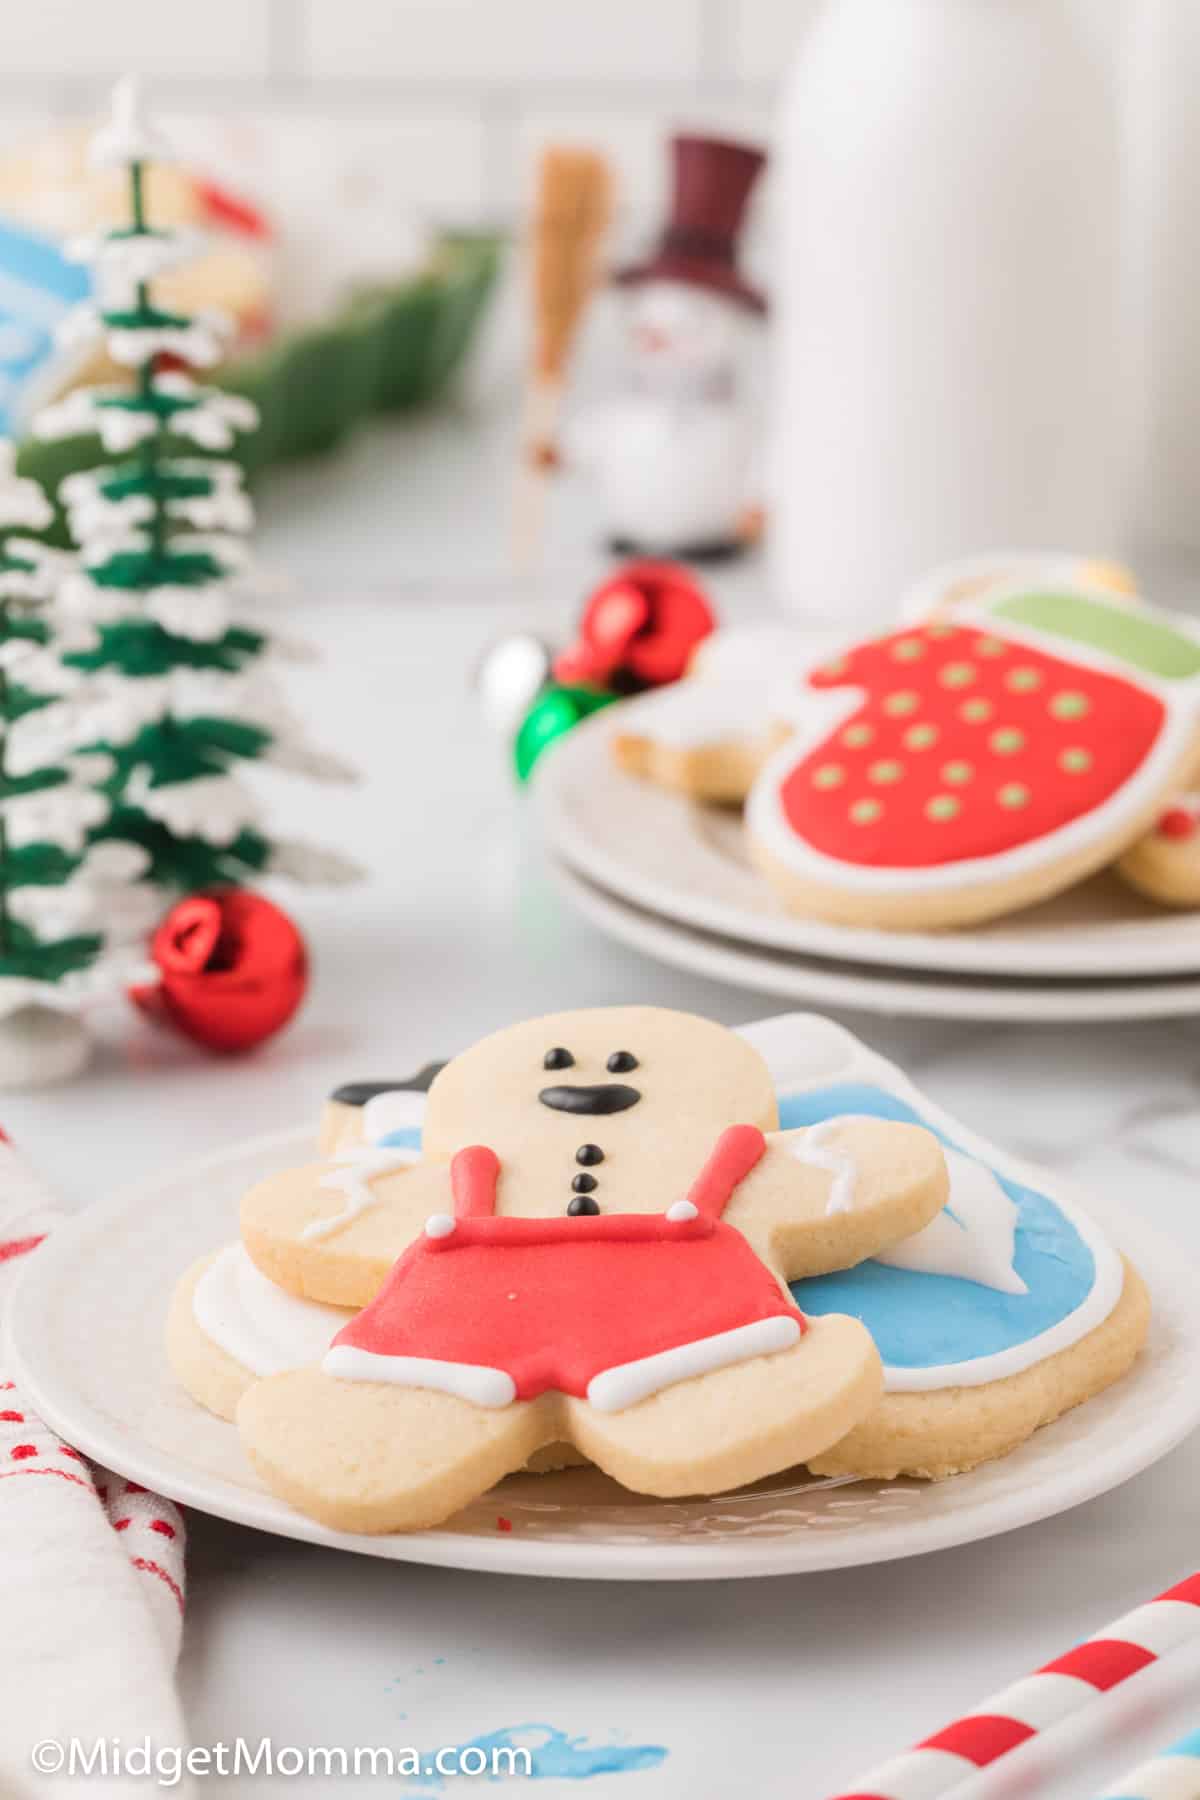 Christmas Sugar Cookie Recipe